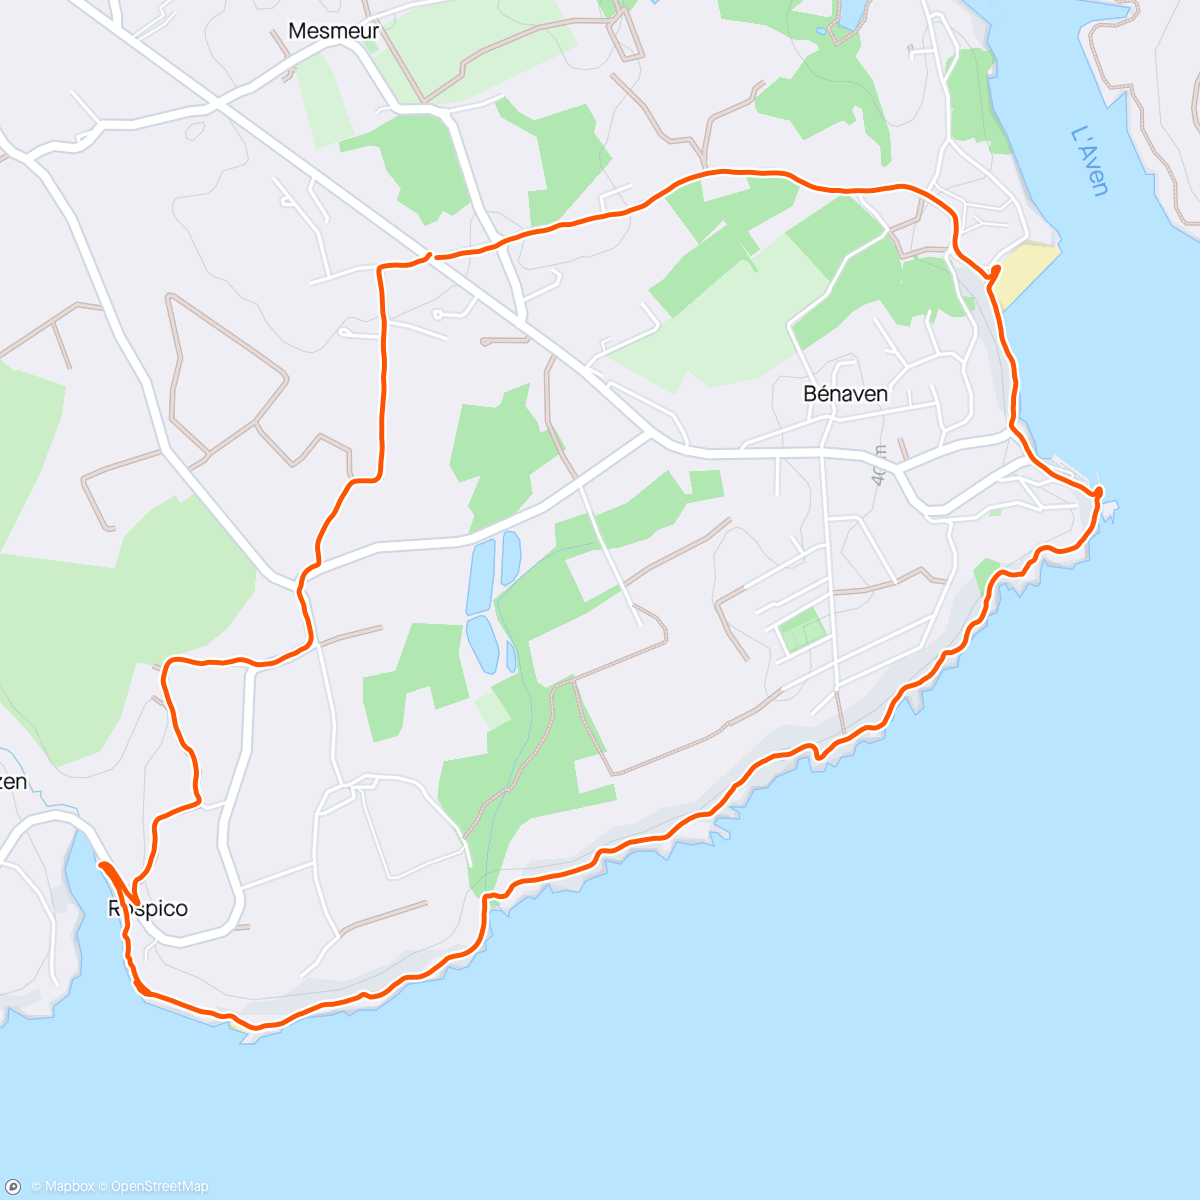 Mapa de la actividad, Lanmeur - Saint-Nicolas - le port - Rospico